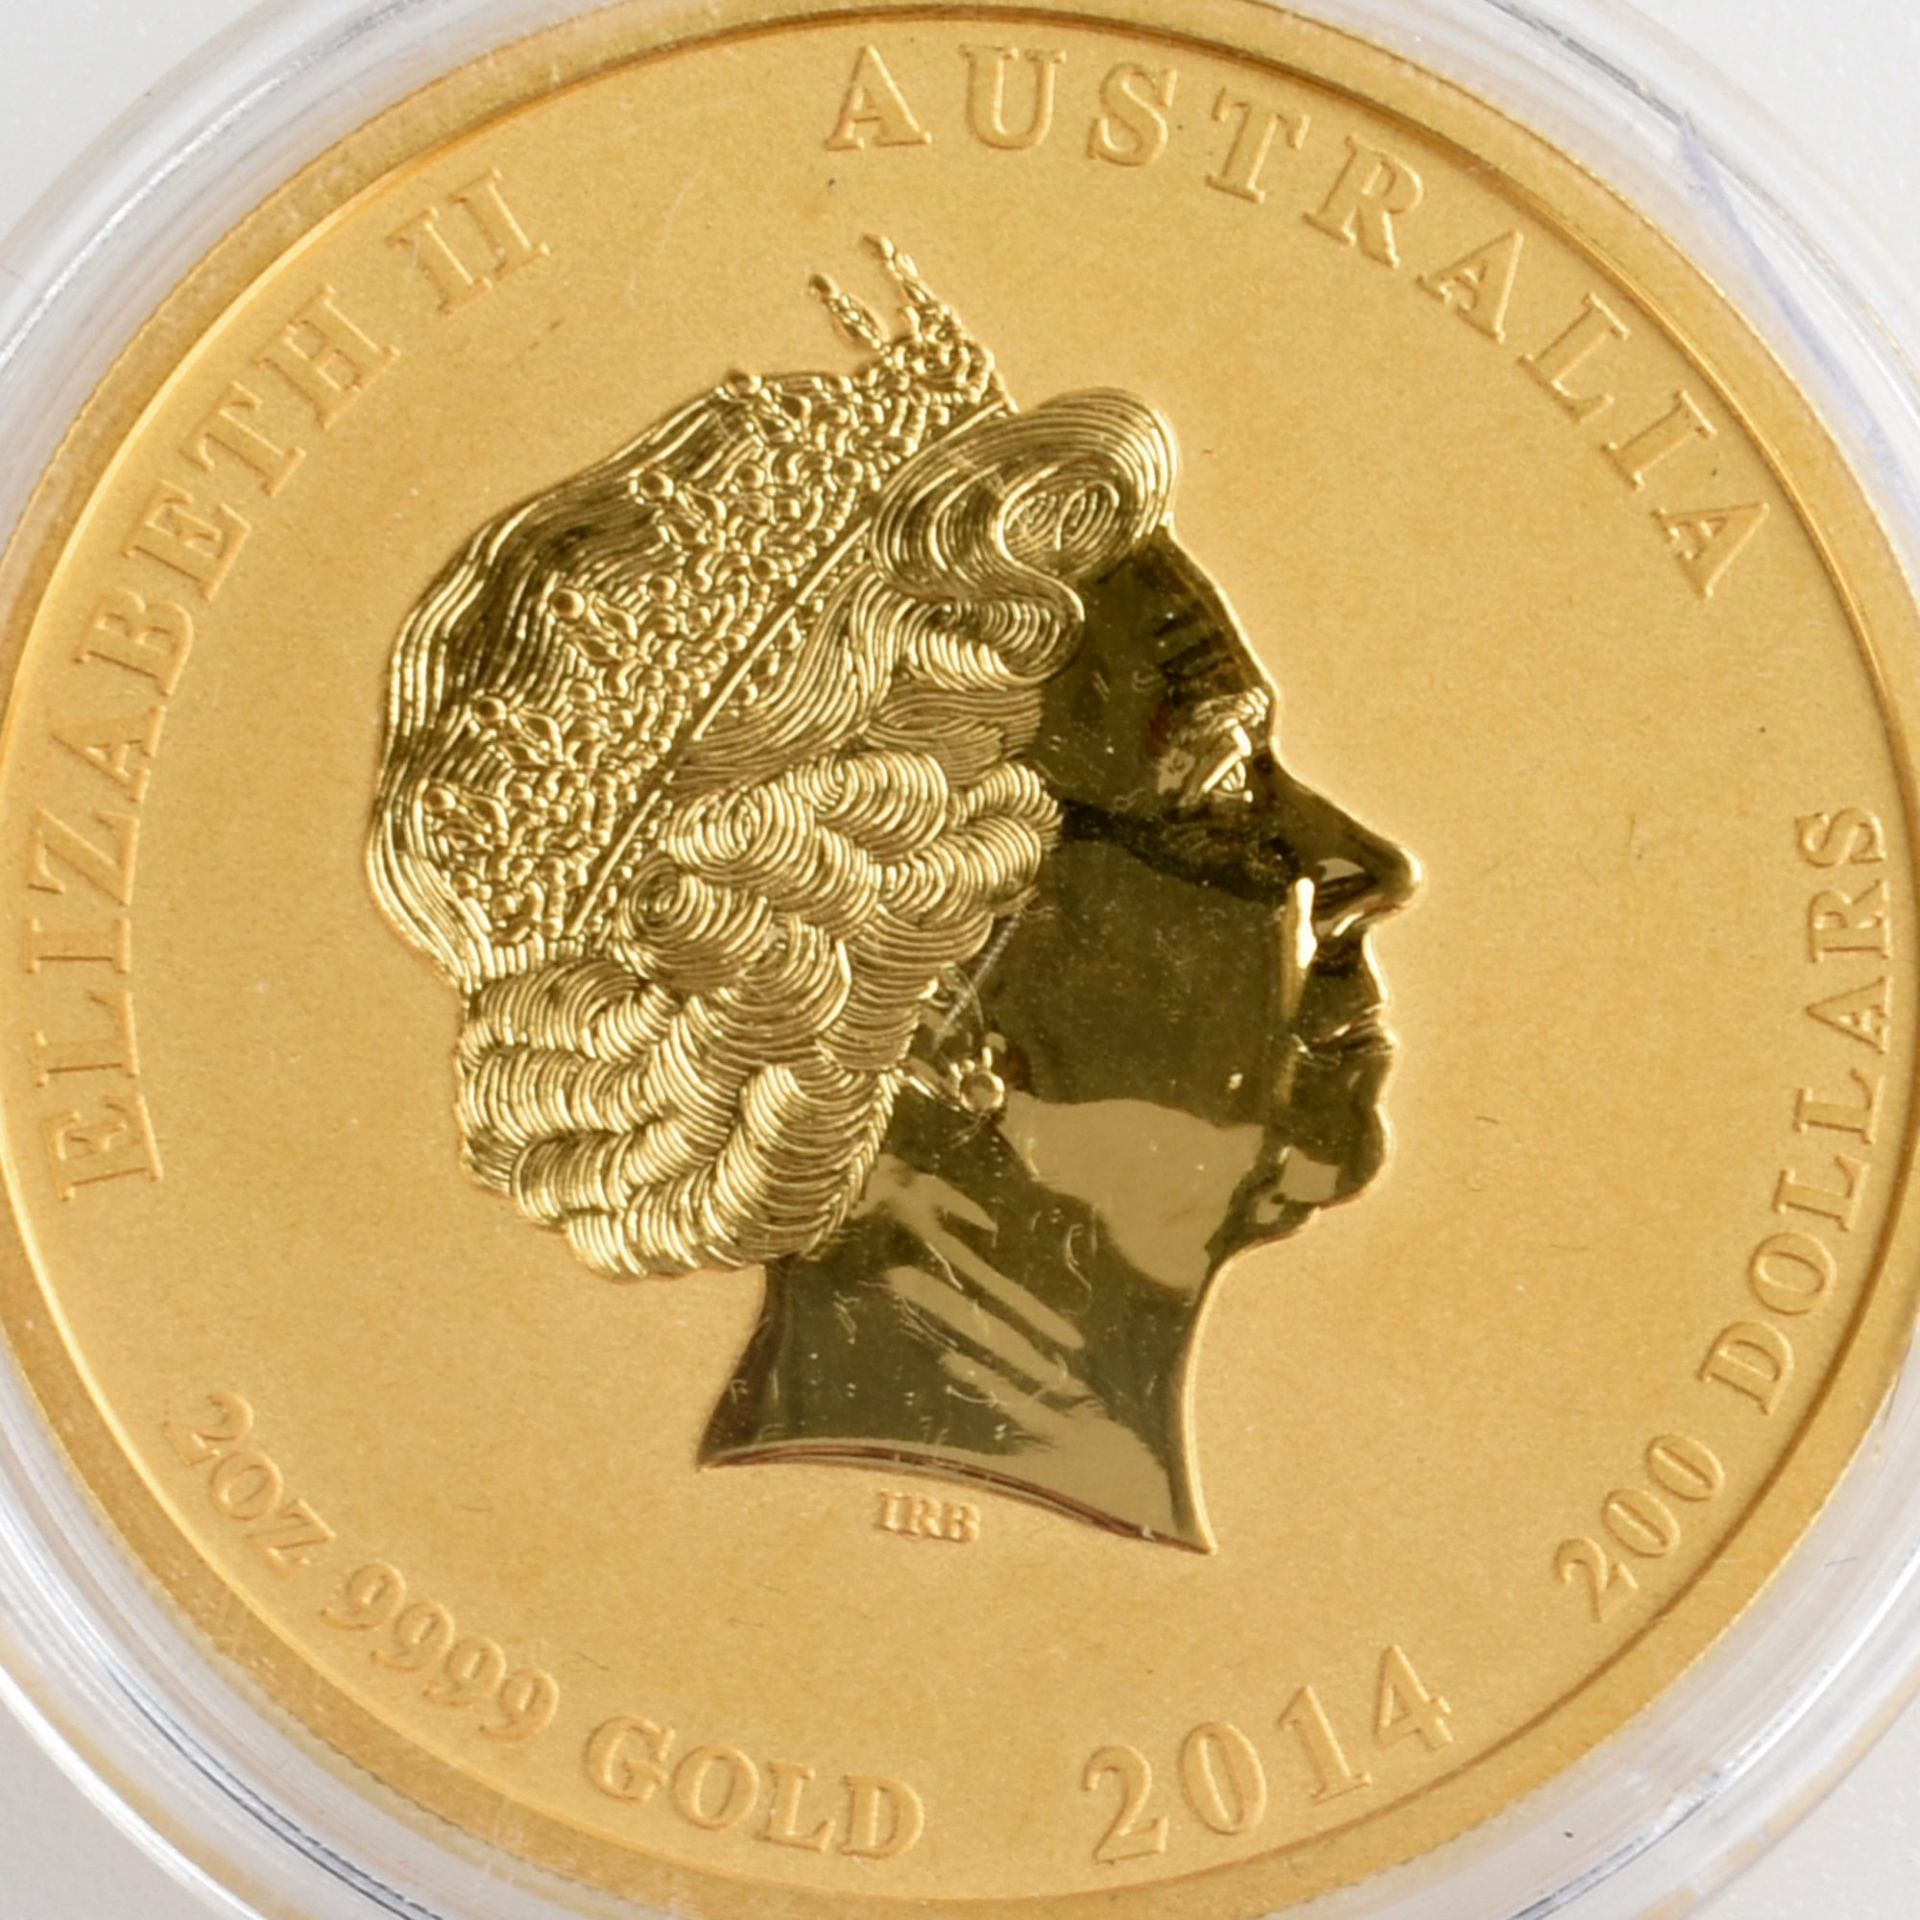 200 Gold-Dollars Australien 2014 200 Dollar in Gold, 999/1000, 2 oz Feingold (62,21 g), av.